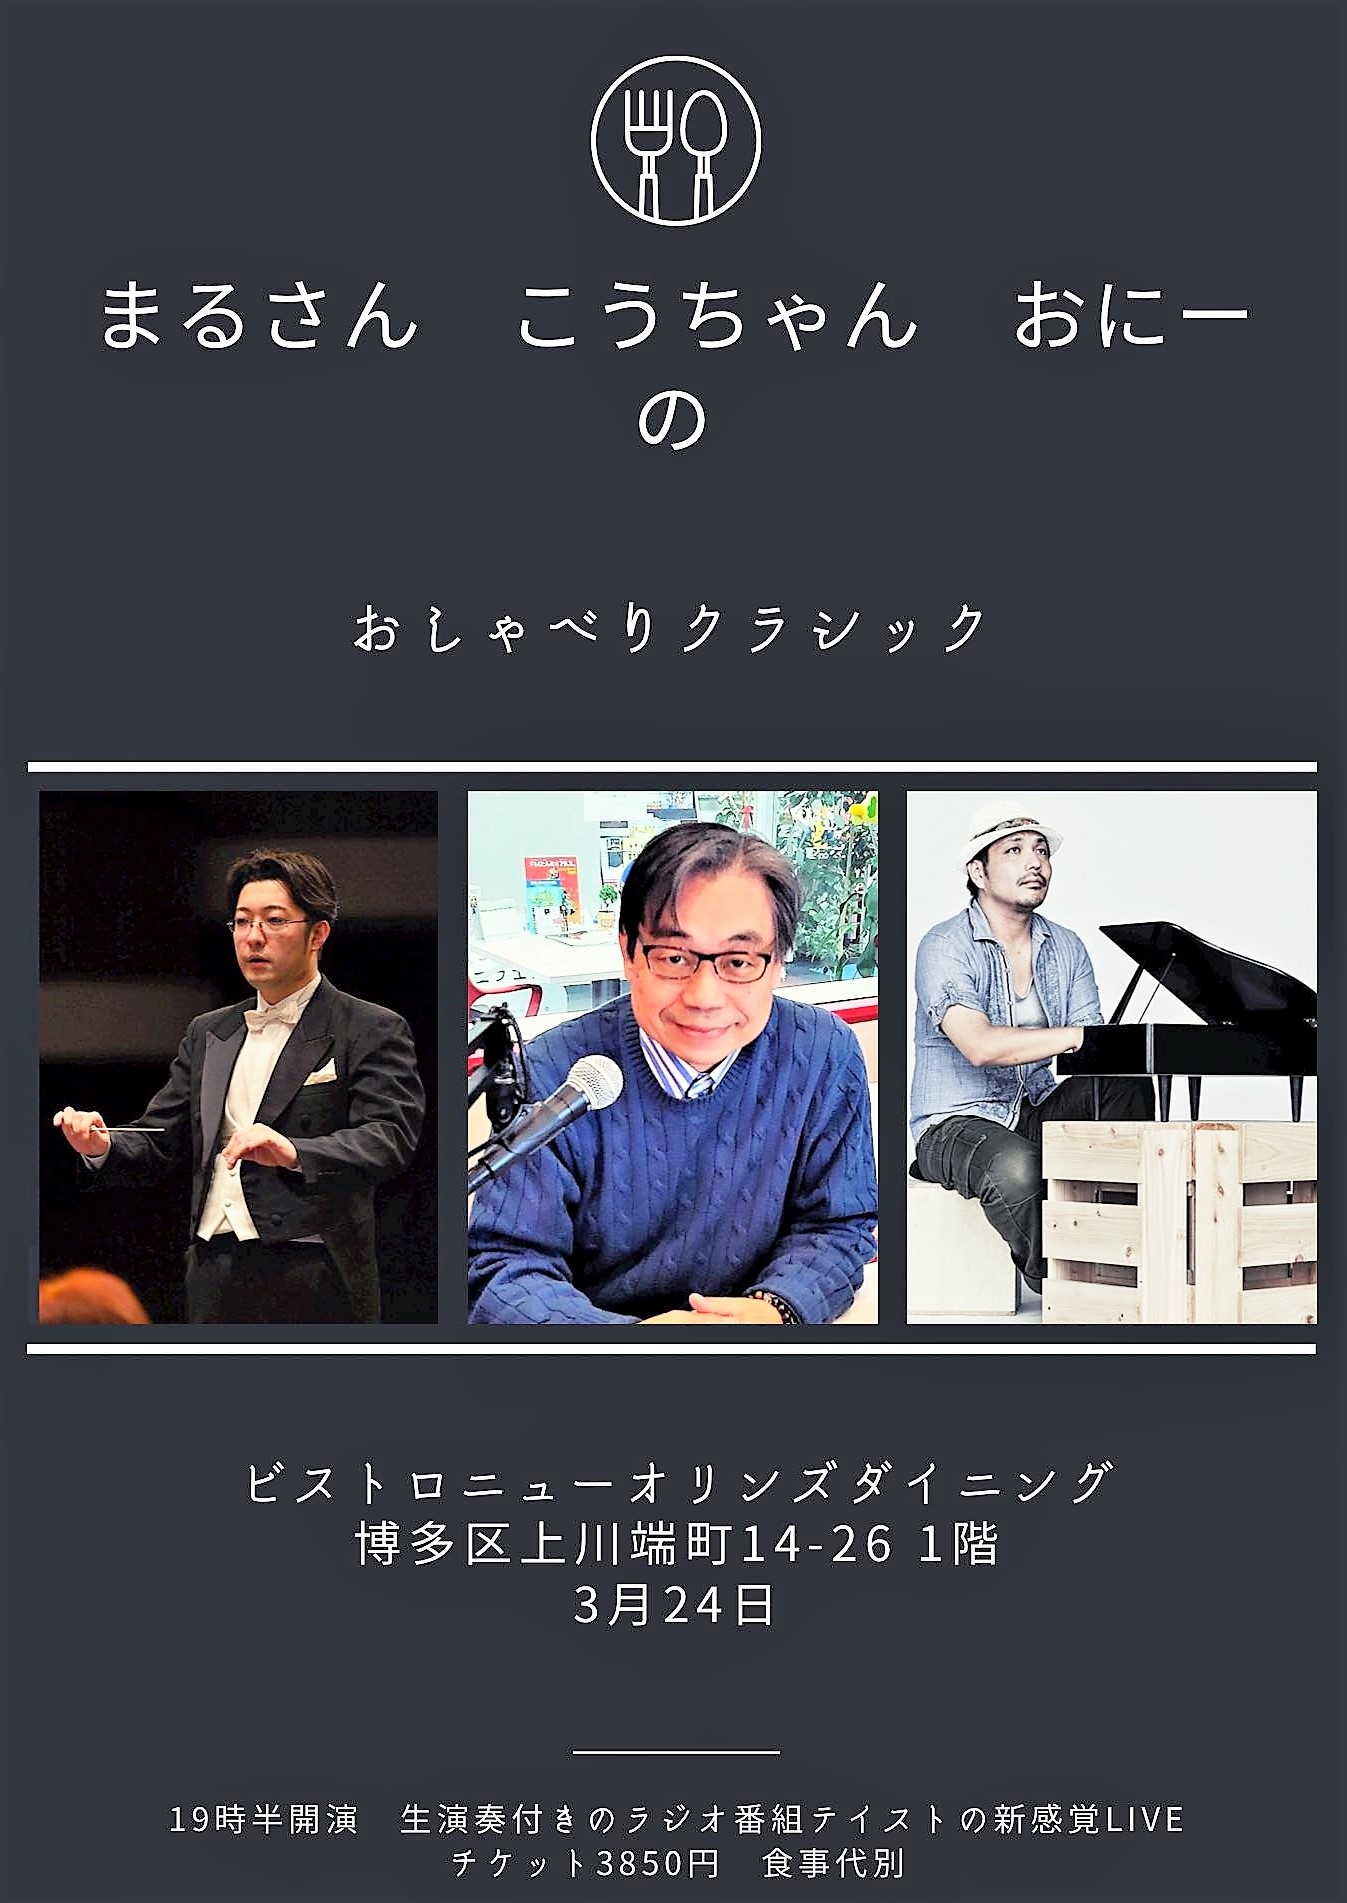 3/30のスペシャルゲストは指揮者の木村厚太郎さん!